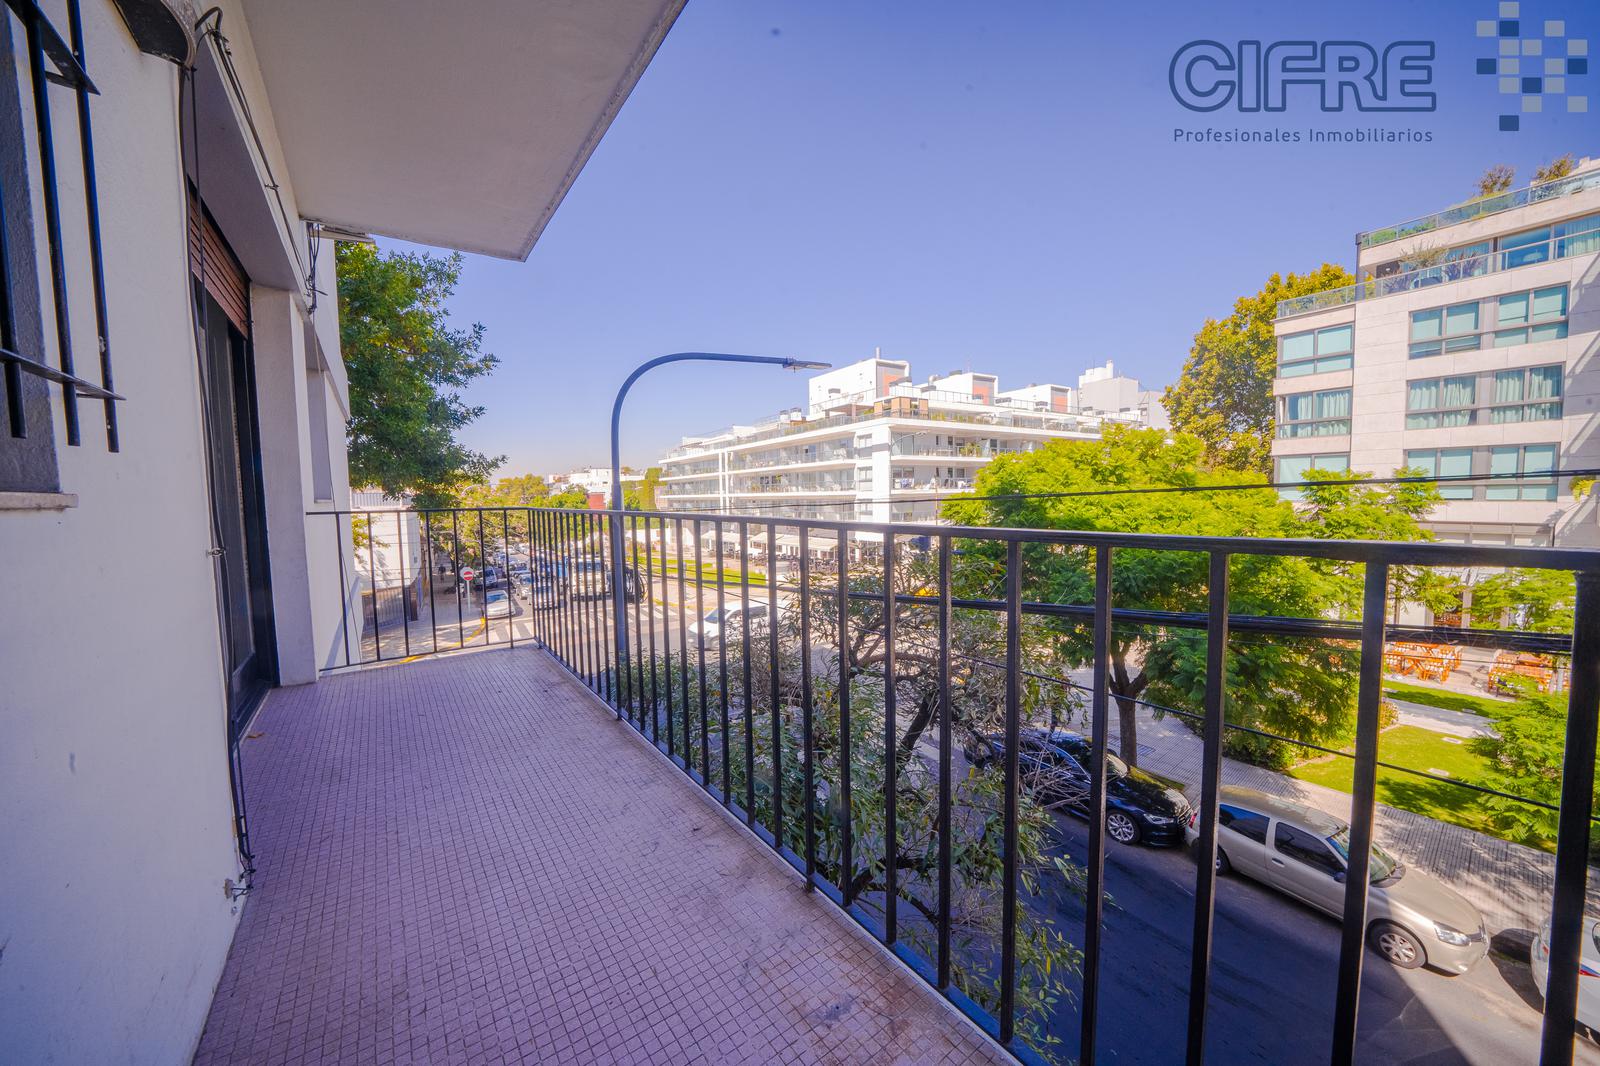 #5019697 | Rental | Apartment | Villa Urquiza (Cifre Profesionales Inmobiliarios)